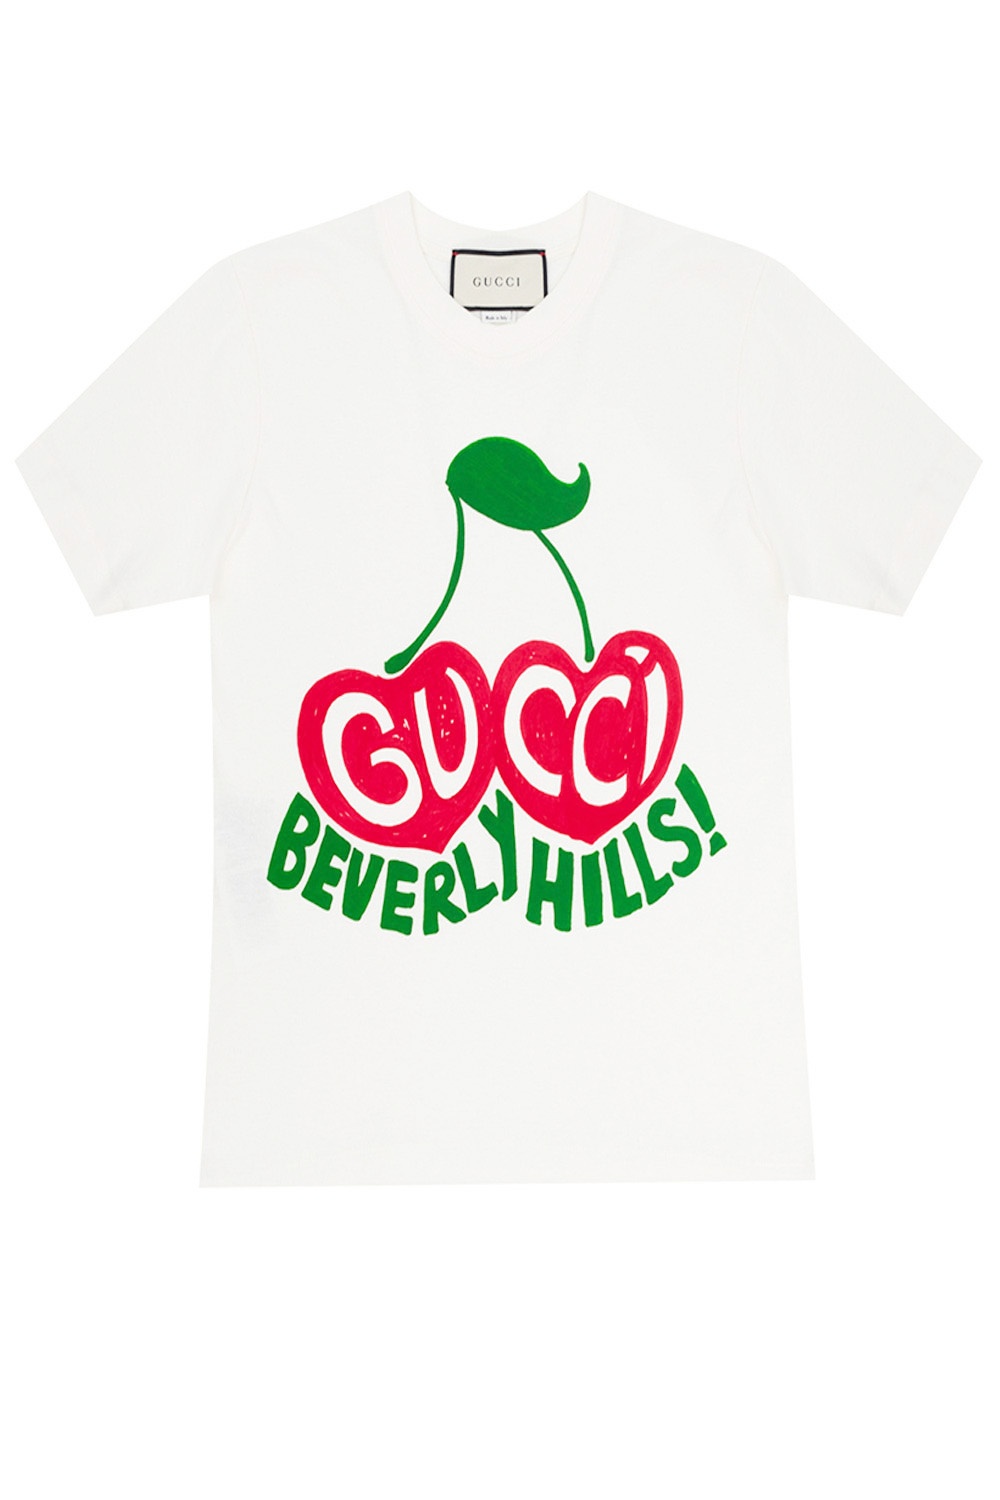 Logo T-shirt Gucci - Vitkac Australia